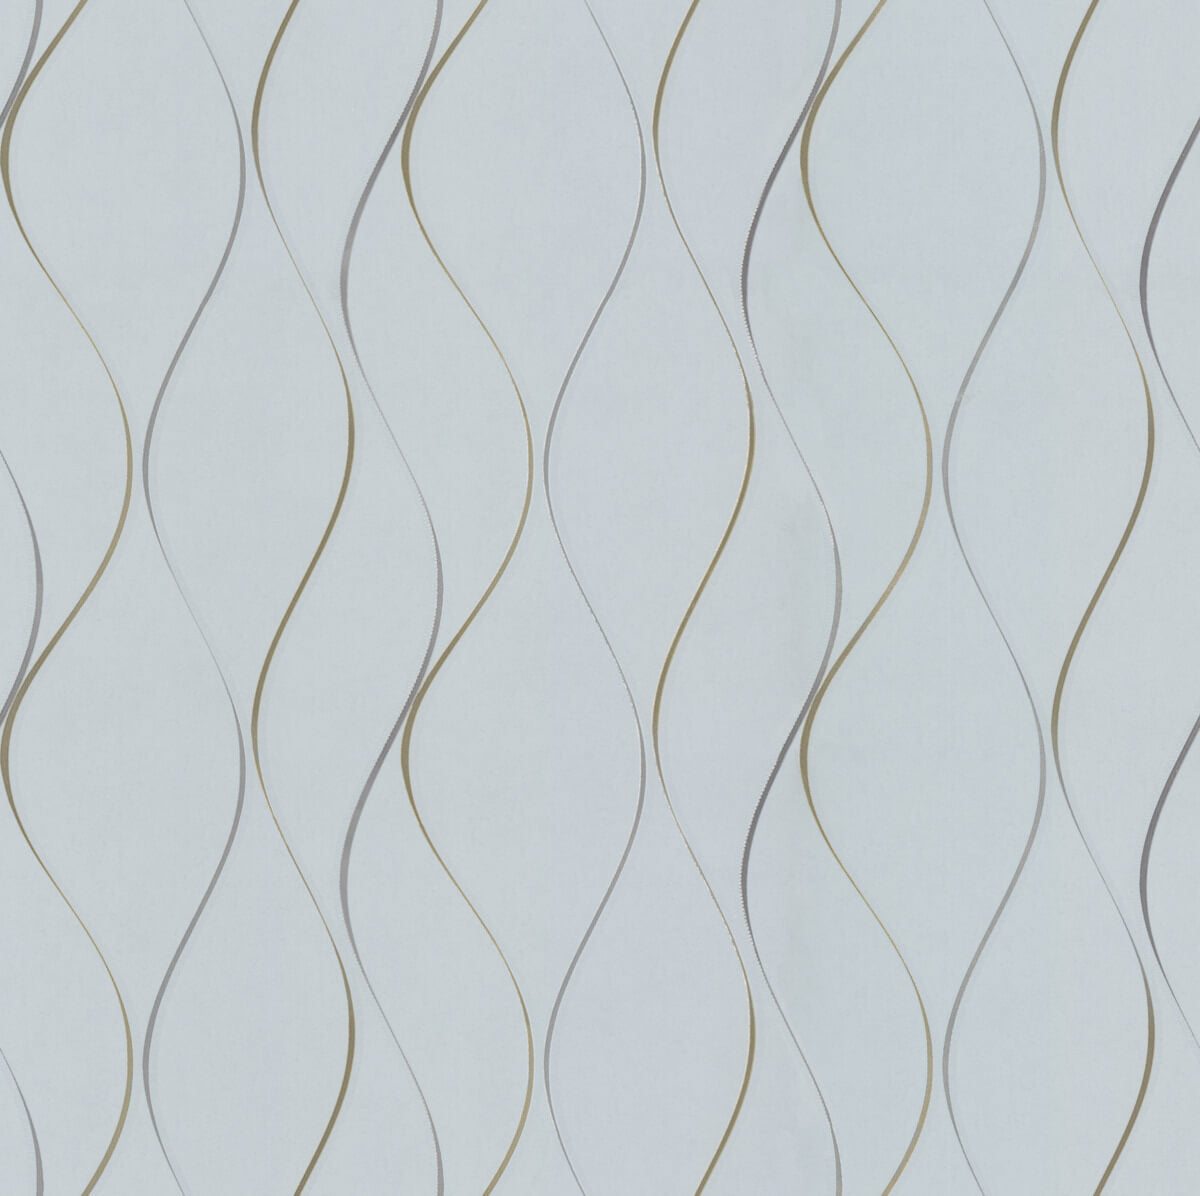 light gray stripe wallpaper